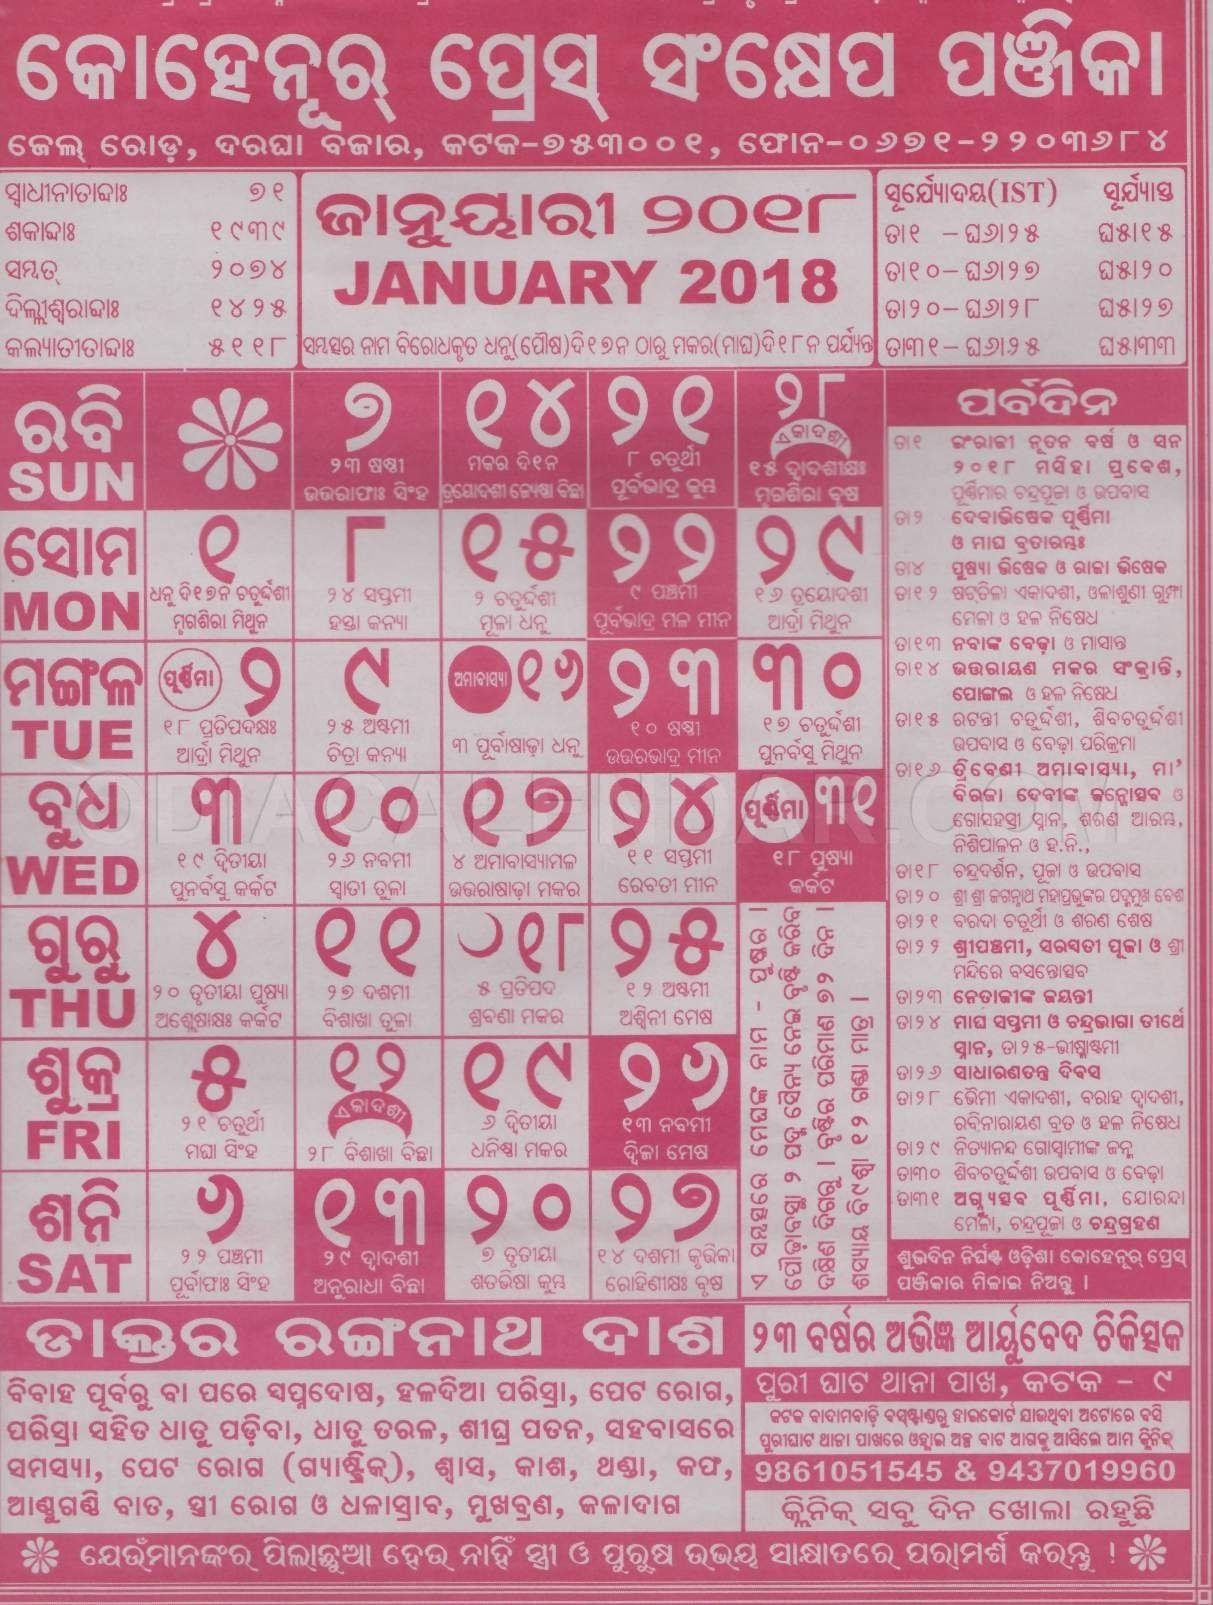 20+ Calendar 2021 Odia - Free Download Printable Calendar November 2021 Odia Calendar